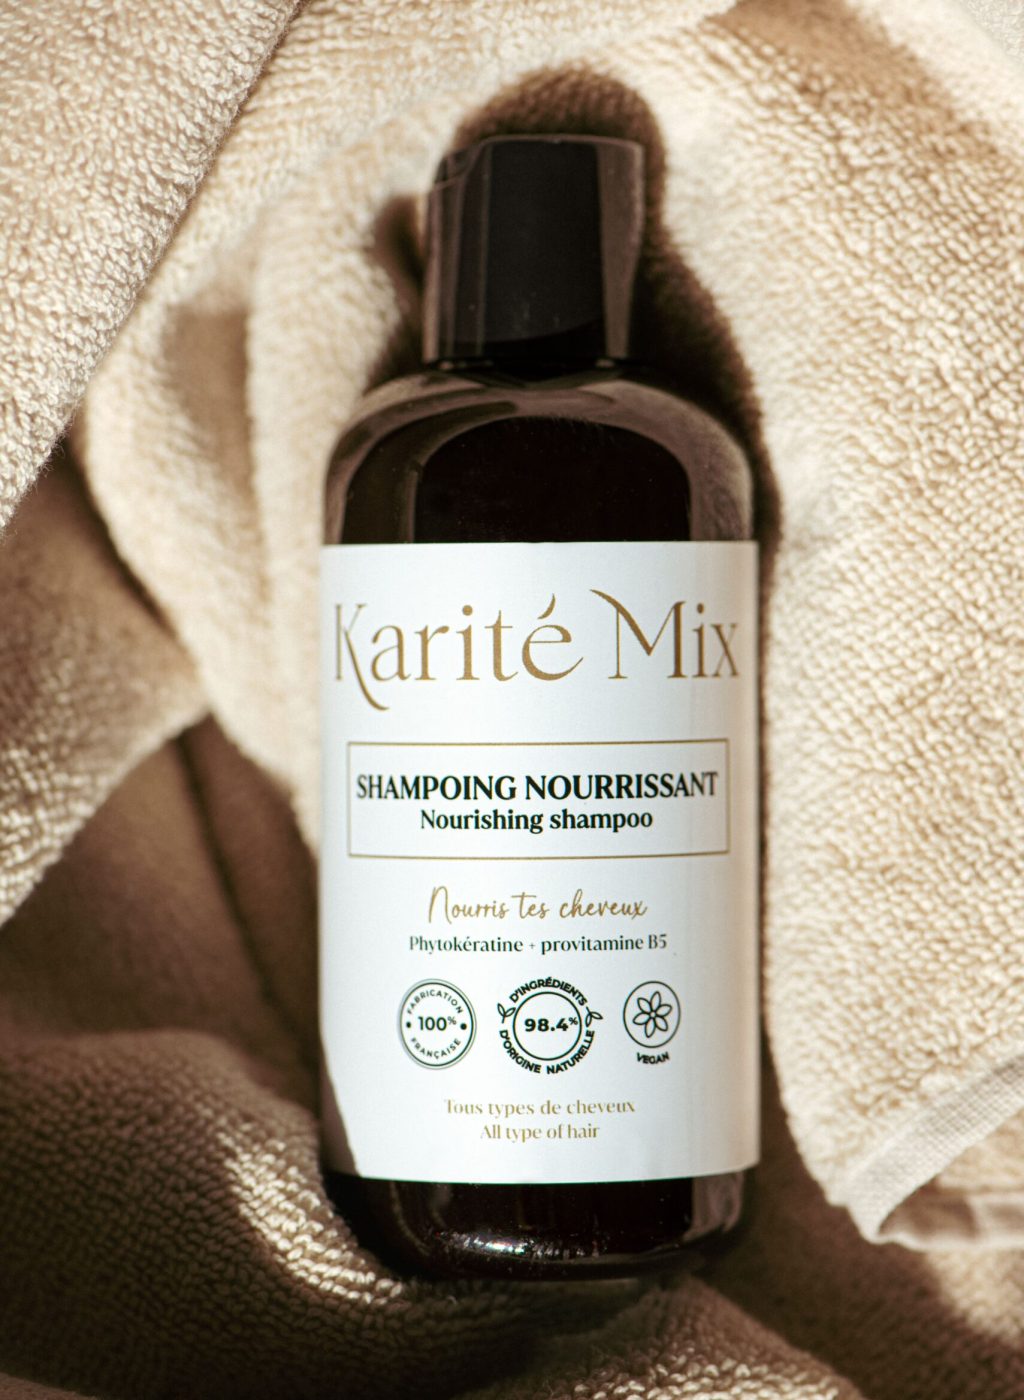 shampoing_nourrissant_karite_mix